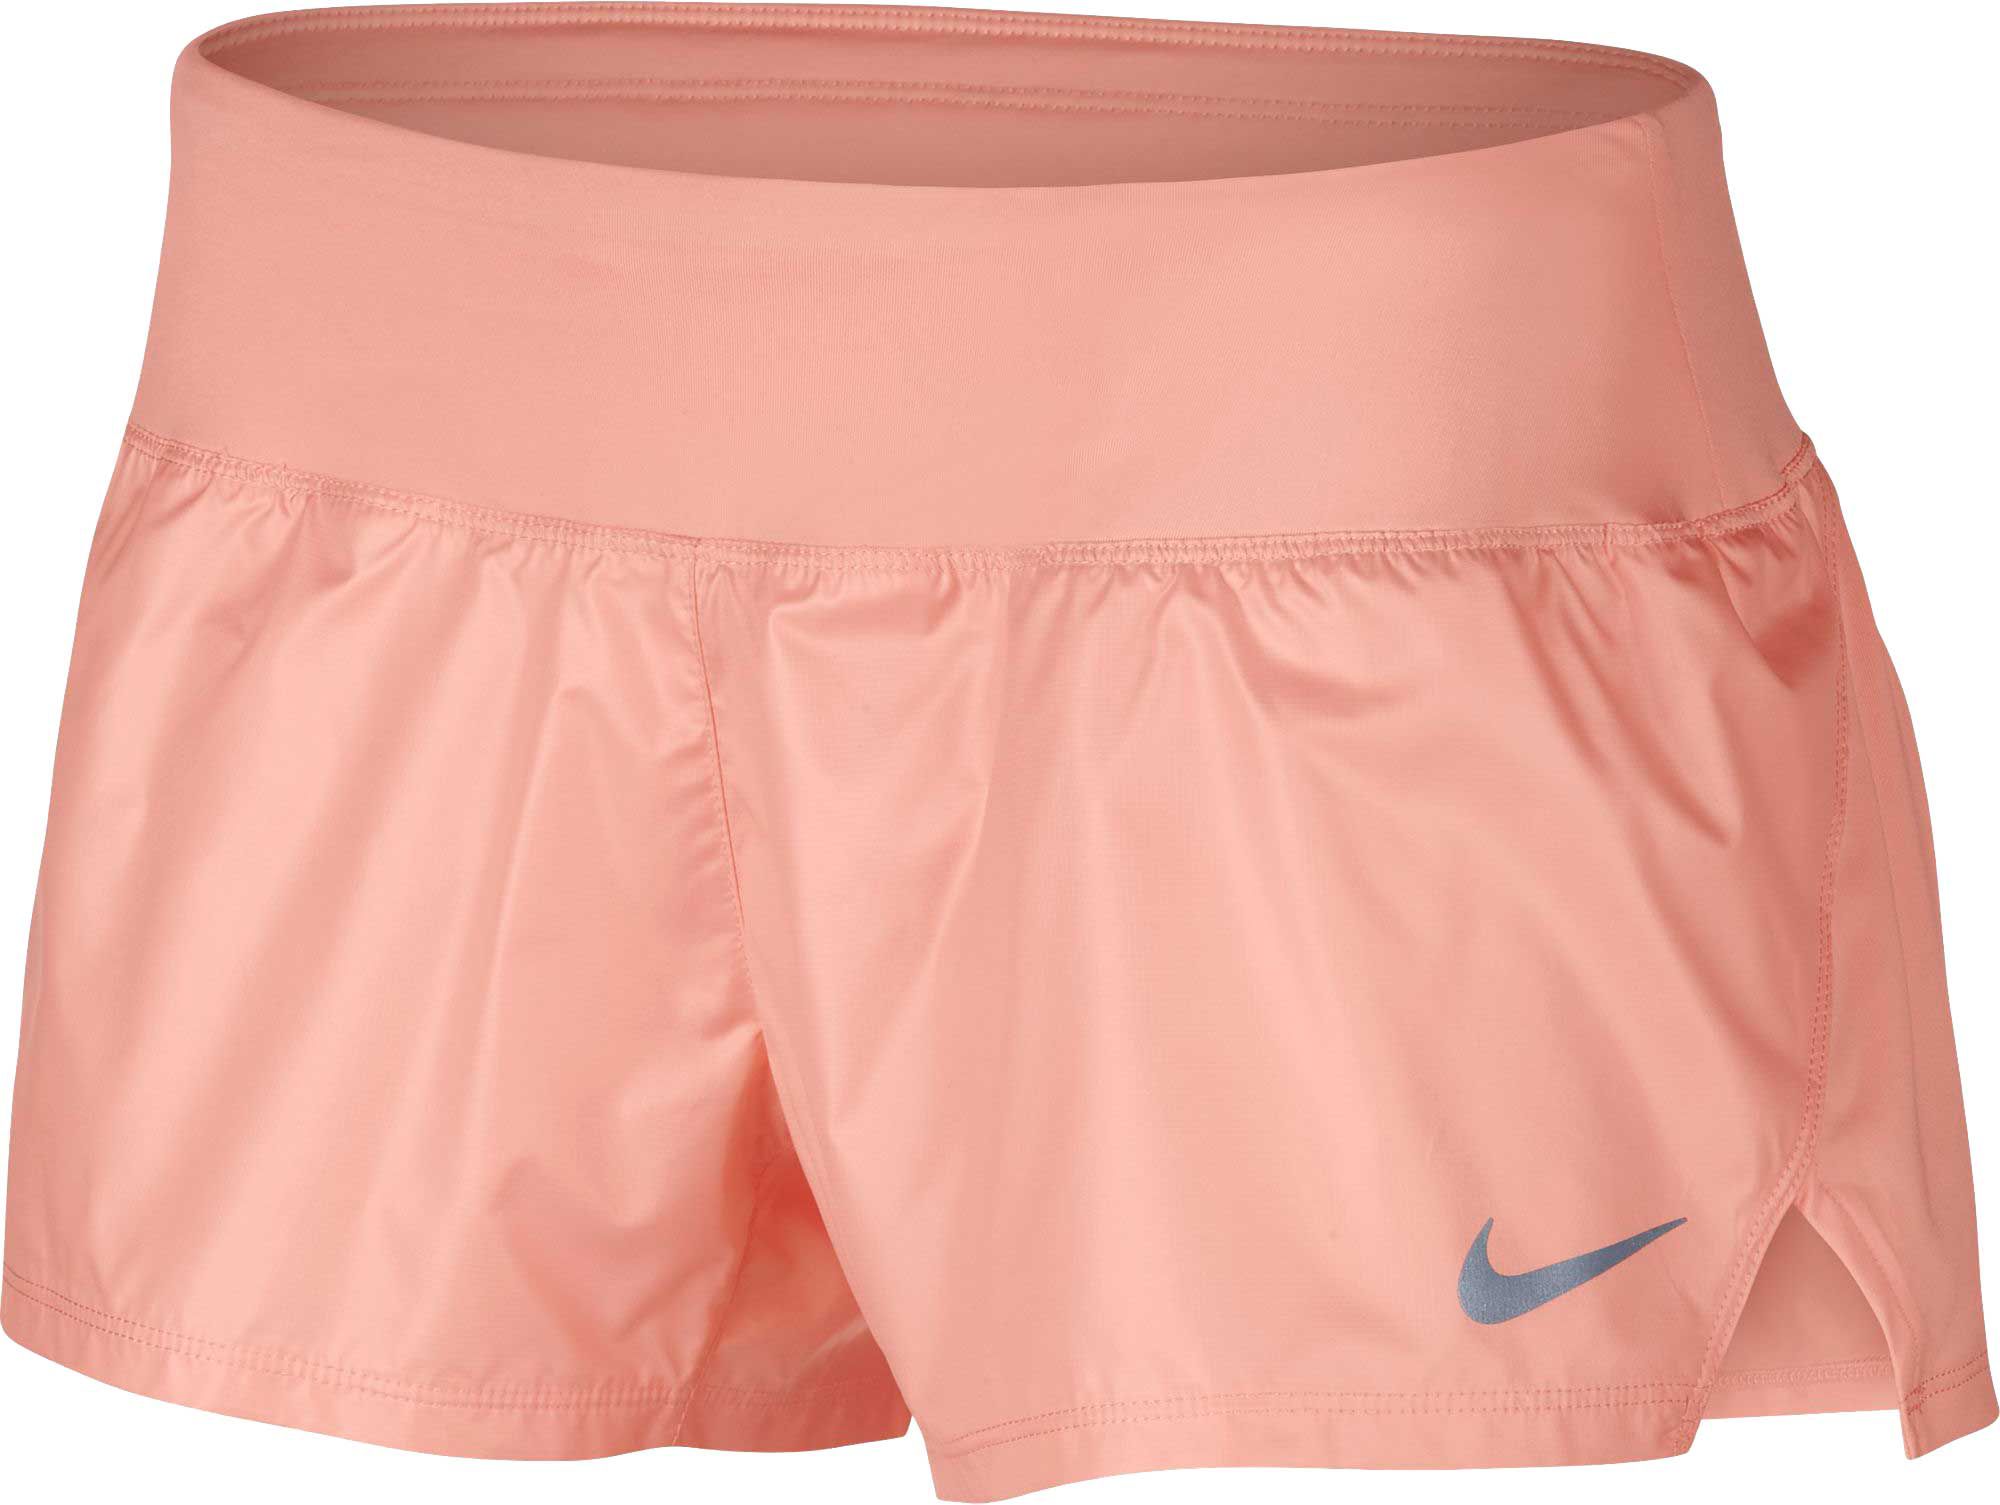 nike dry running shorts womens